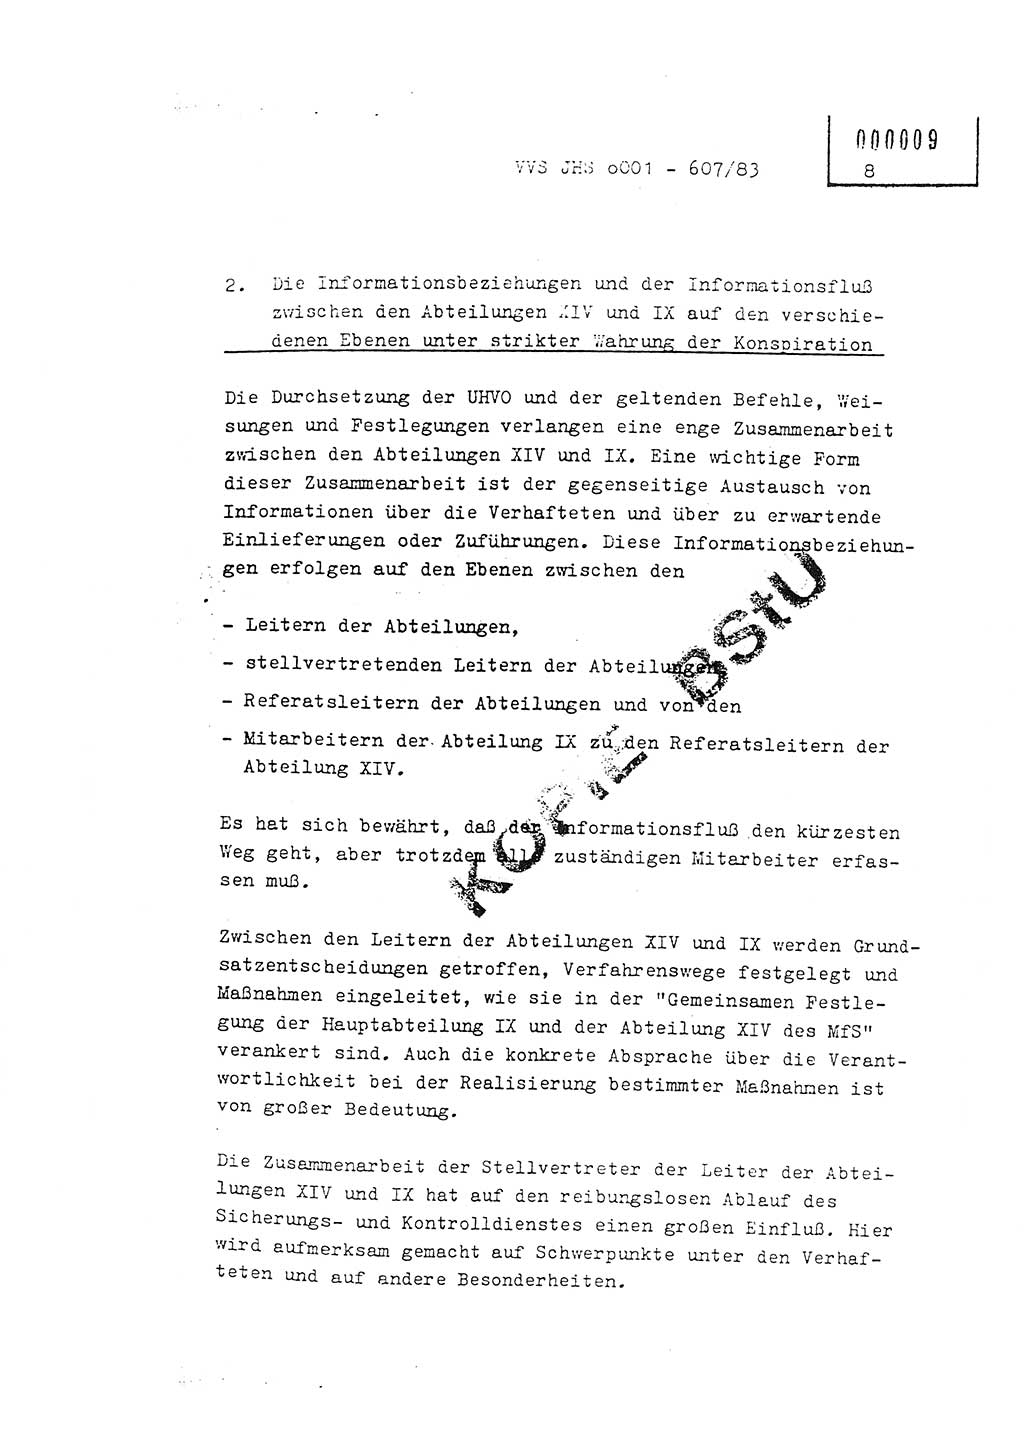 Fachschulabschlußarbeit Oberleutnant Hans-Joachim Saltmann (BV Rostock Abt. ⅩⅣ), Ministerium für Staatssicherheit (MfS) [Deutsche Demokratische Republik (DDR)], Juristische Hochschule (JHS), Vertrauliche Verschlußsache (VVS) o001-607/83, Potsdam 1983, Seite 8 (FS-Abschl.-Arb. MfS DDR JHS VVS o001-607/83 1983, S. 8)